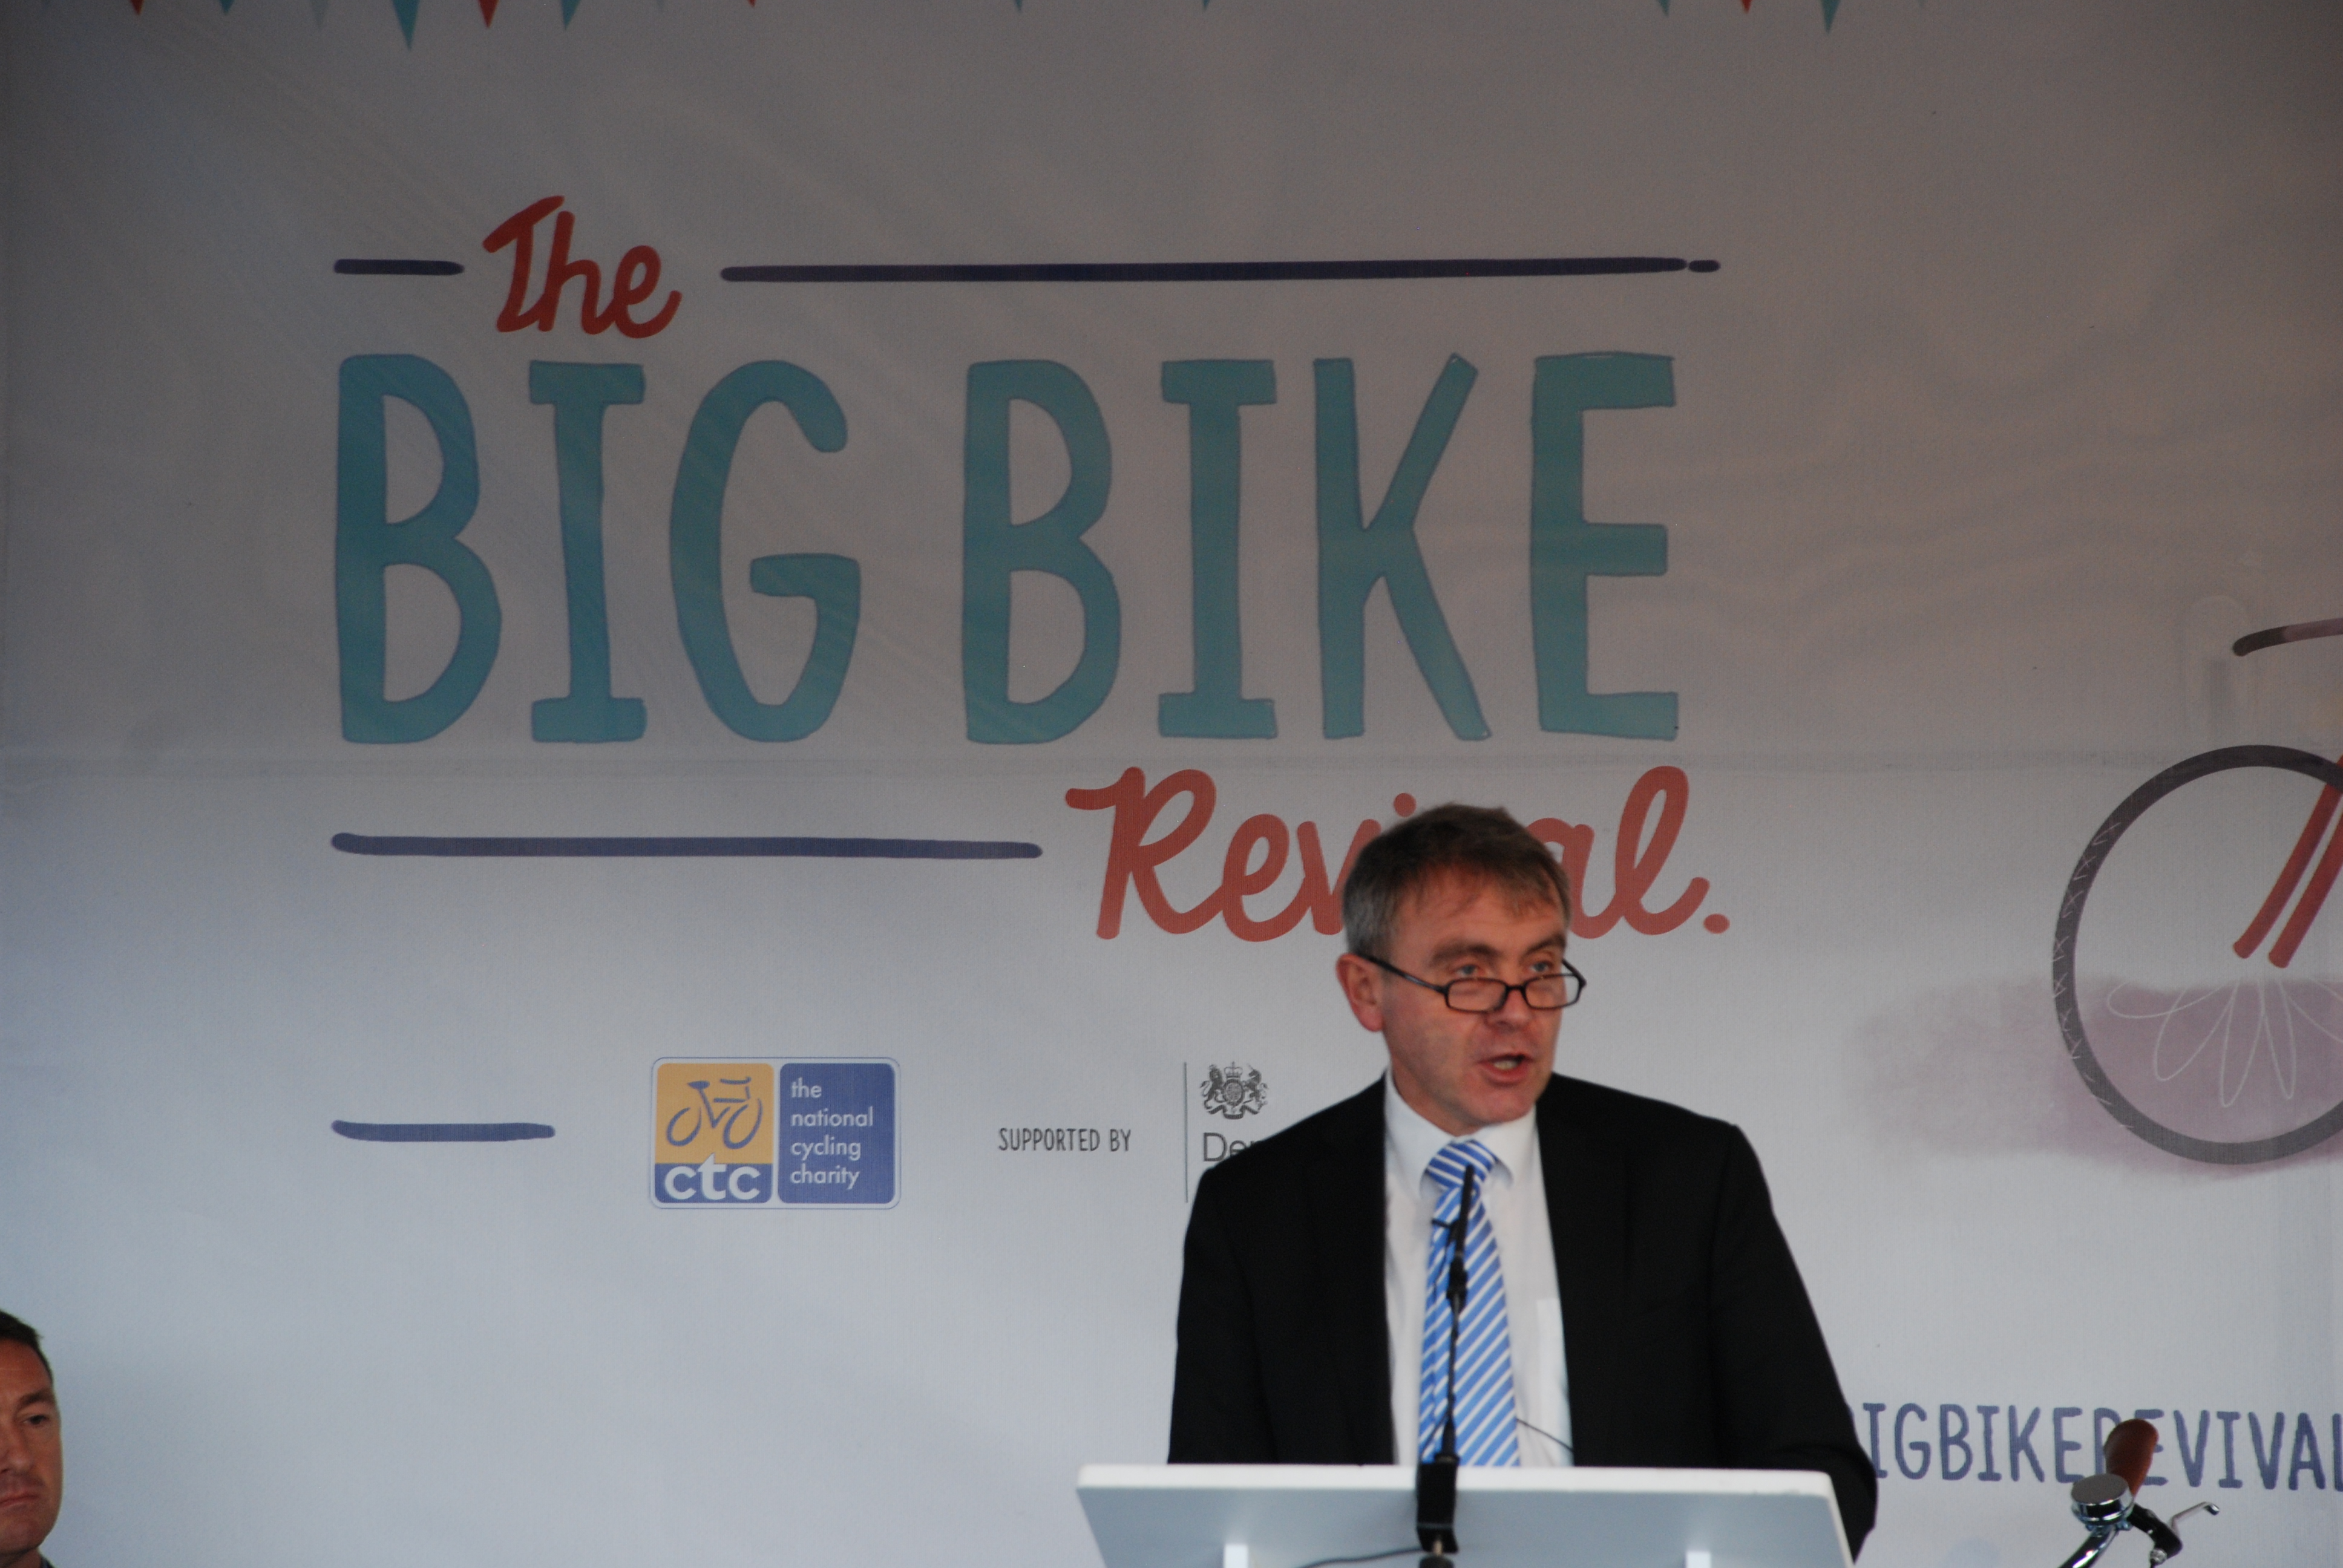 Cycling Minister Robert Goodwill